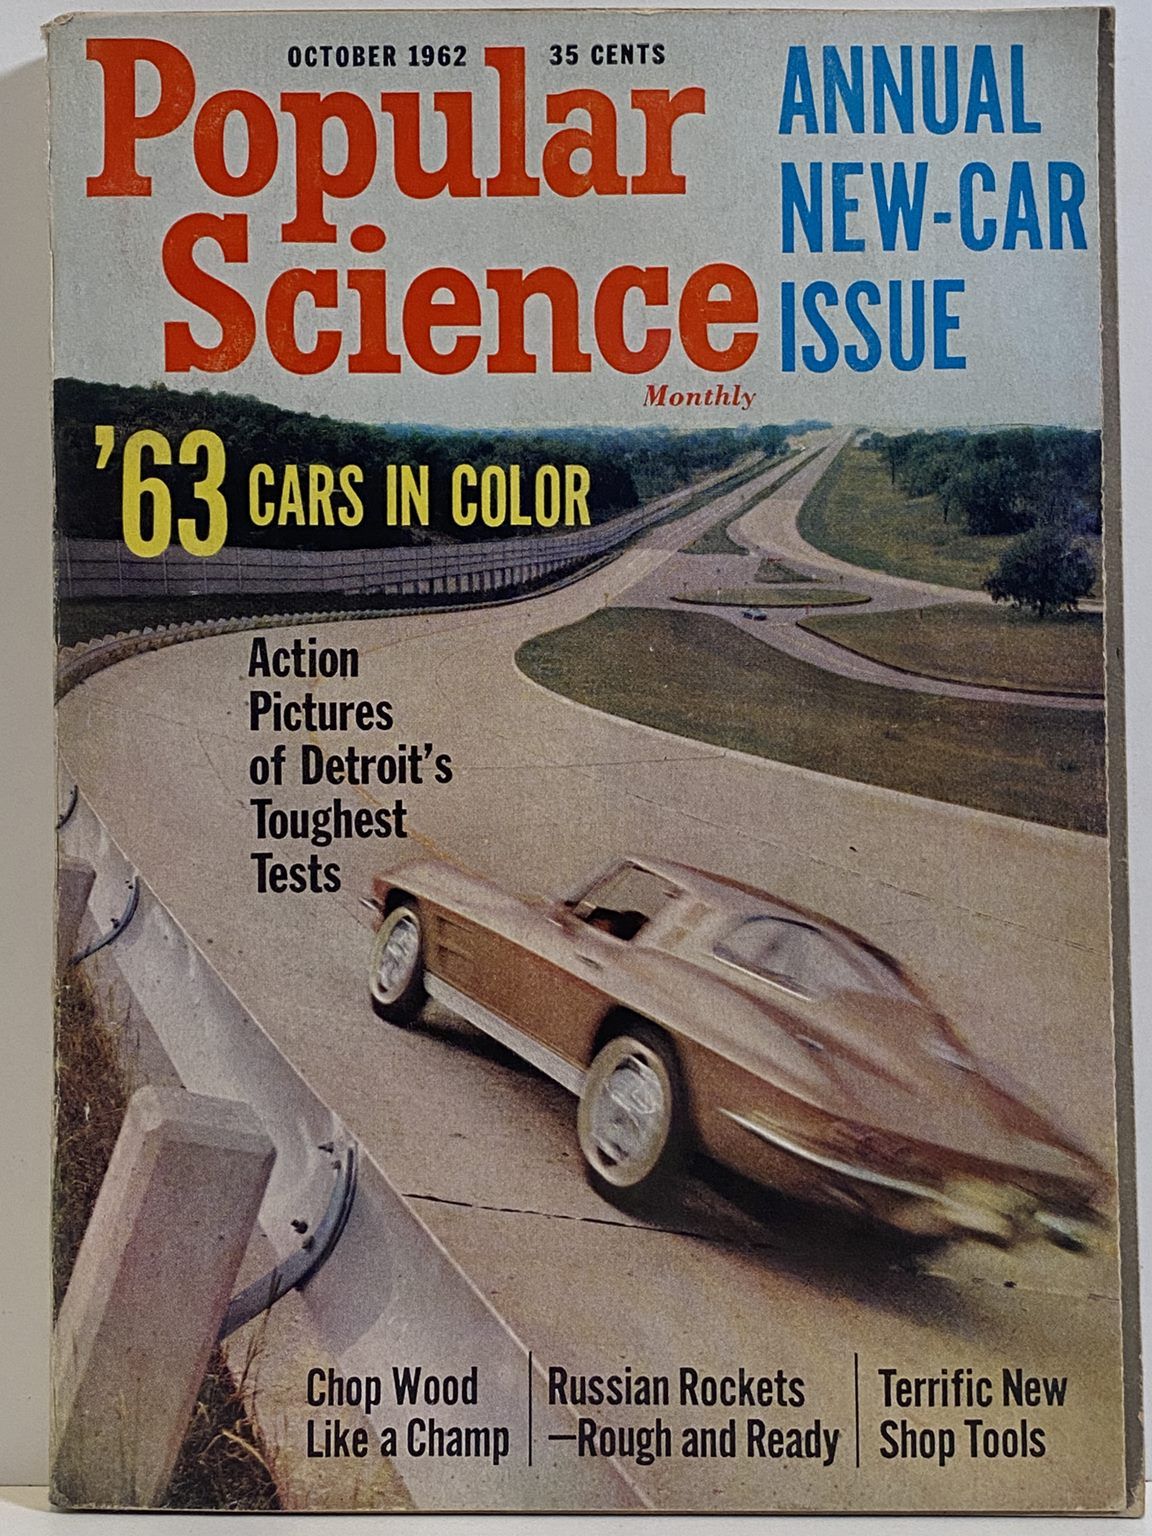 VINTAGE MAGAZINE: Popular Science, Vol. 181, No. 4 - October 1962